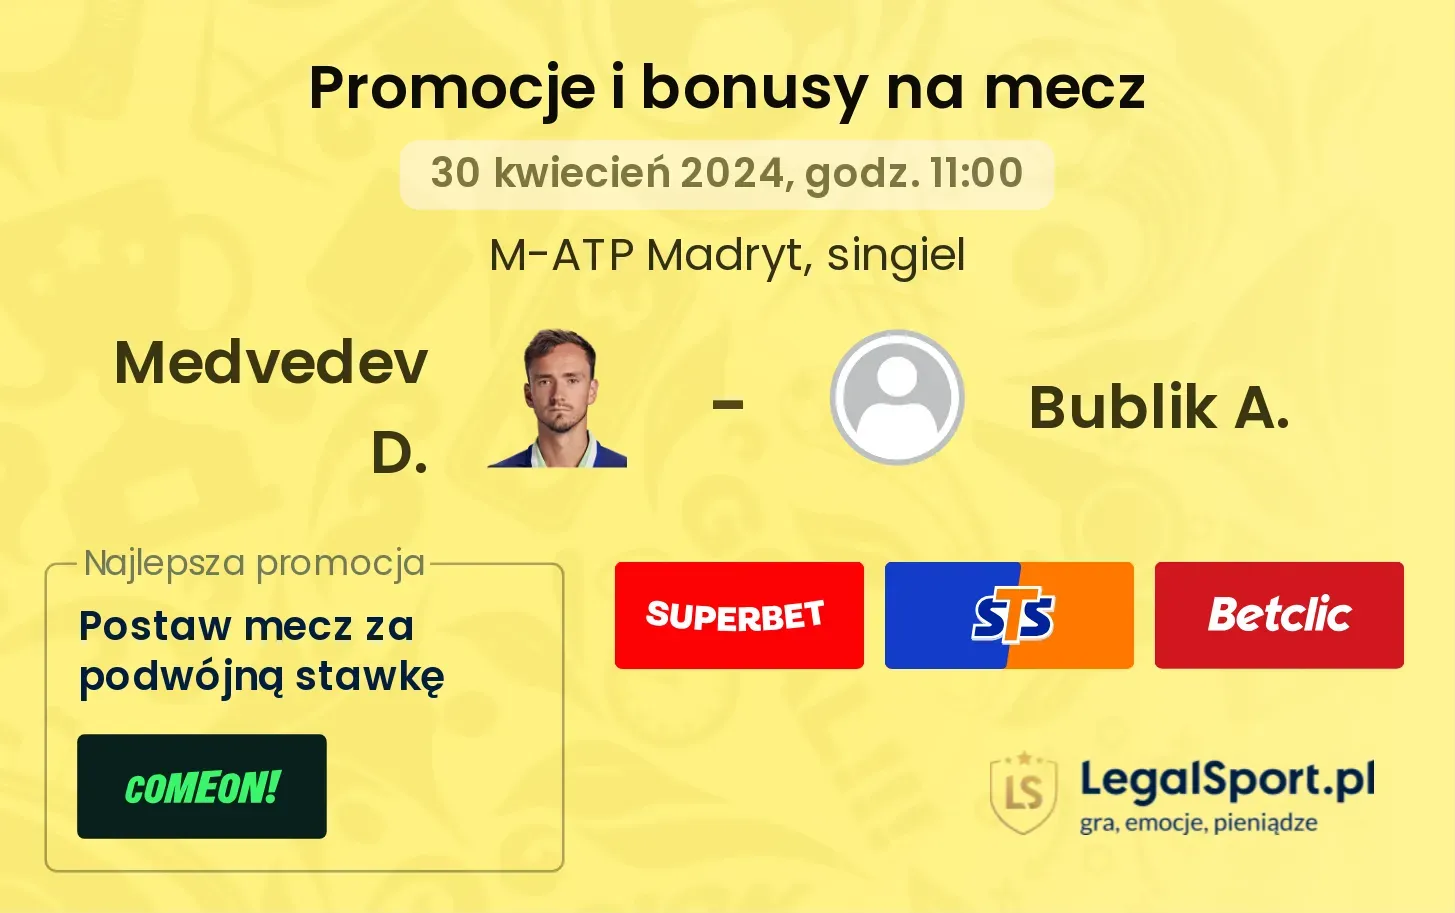 Medvedev D. - Bublik A. promocje bonusy na mecz